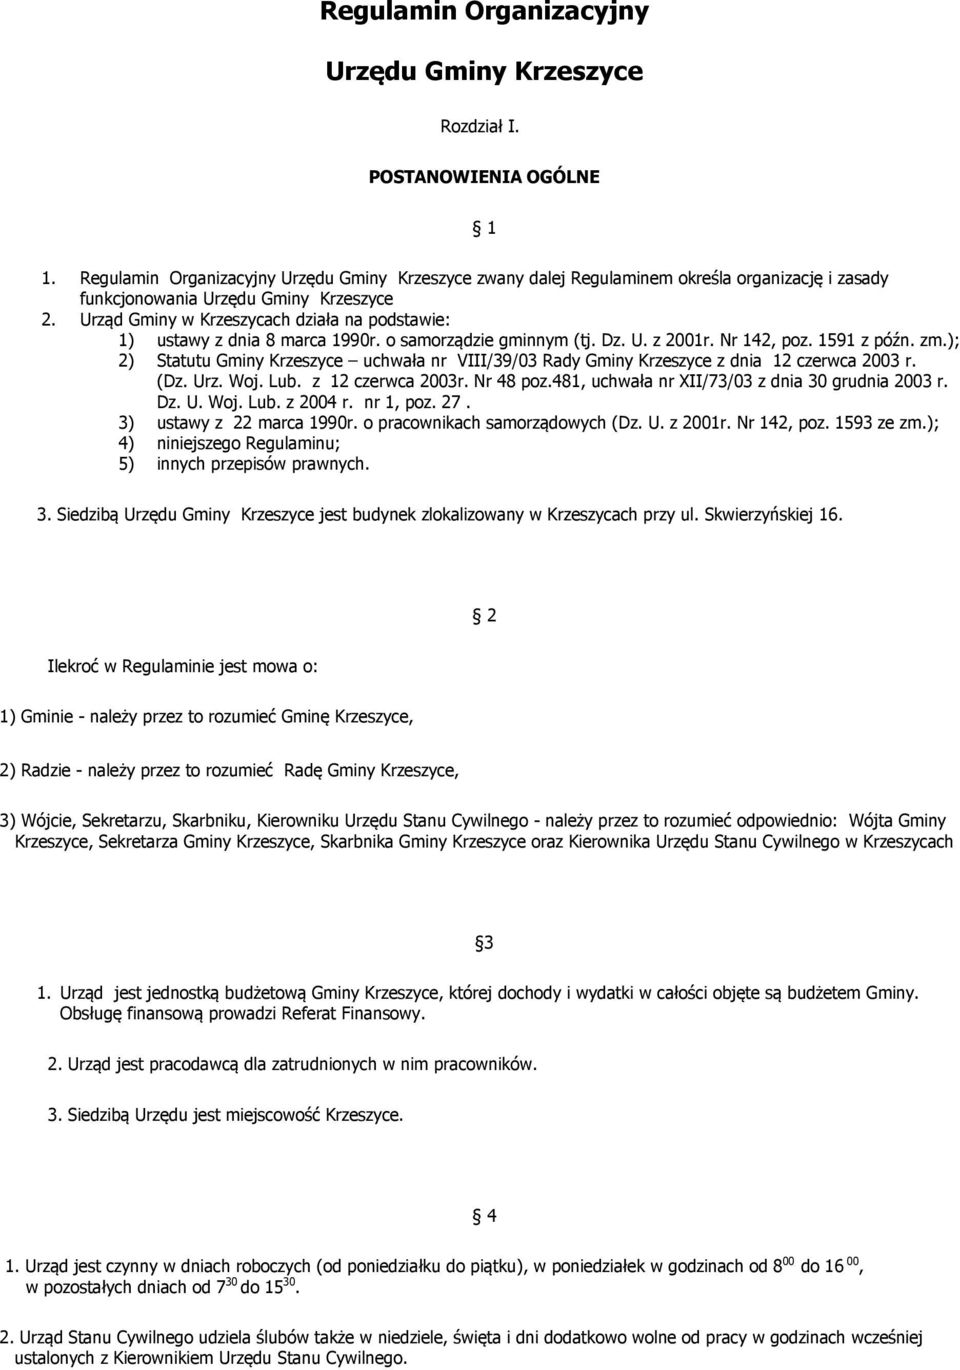 Urząd Gminy w Krzeszycach działa na podstawie: 1) ustawy z dnia 8 marca 1990r. o samorządzie gminnym (tj. Dz. U. z 2001r. Nr 142, poz. 1591 z późn. zm.